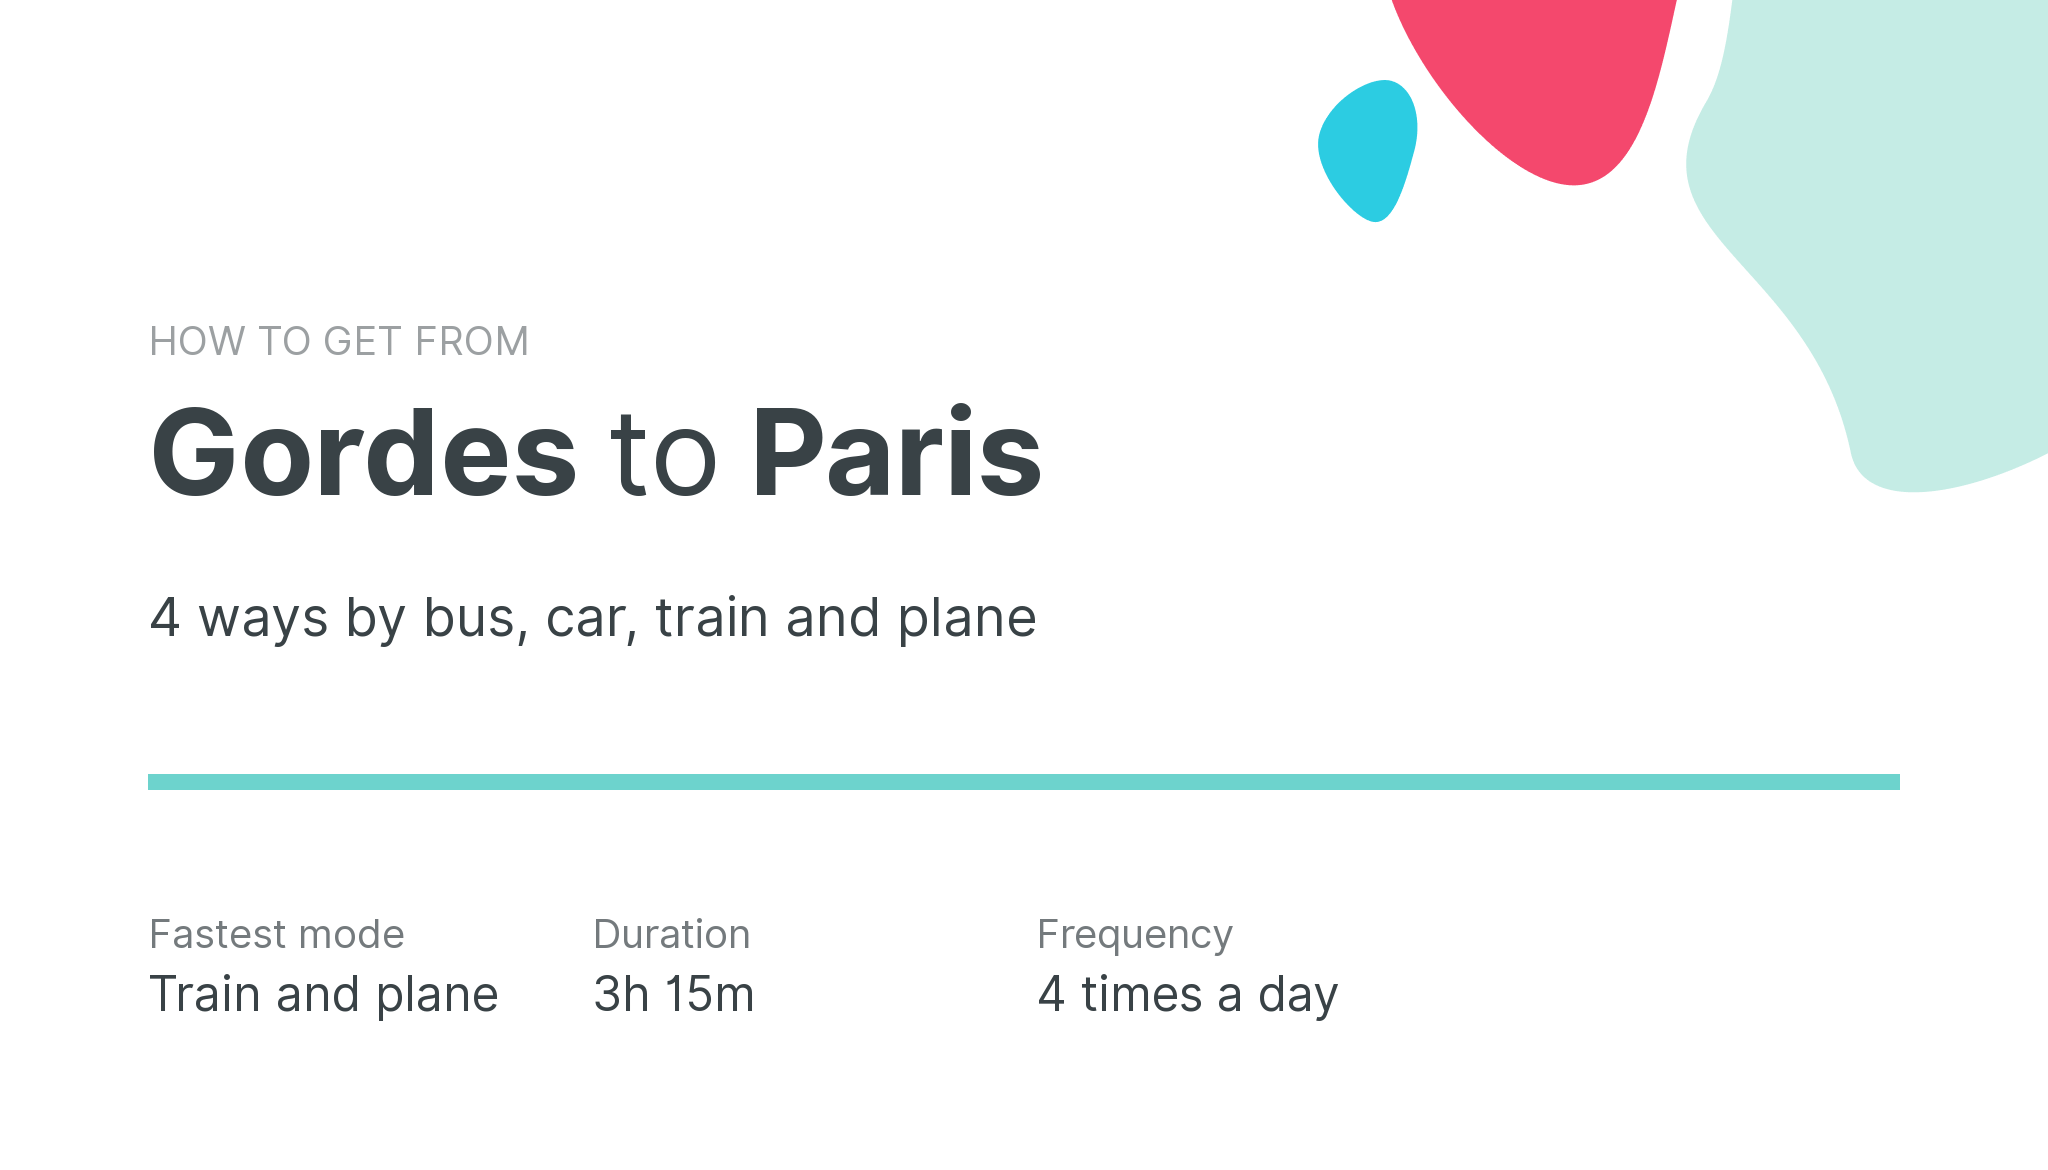 How do I get from Gordes to Paris